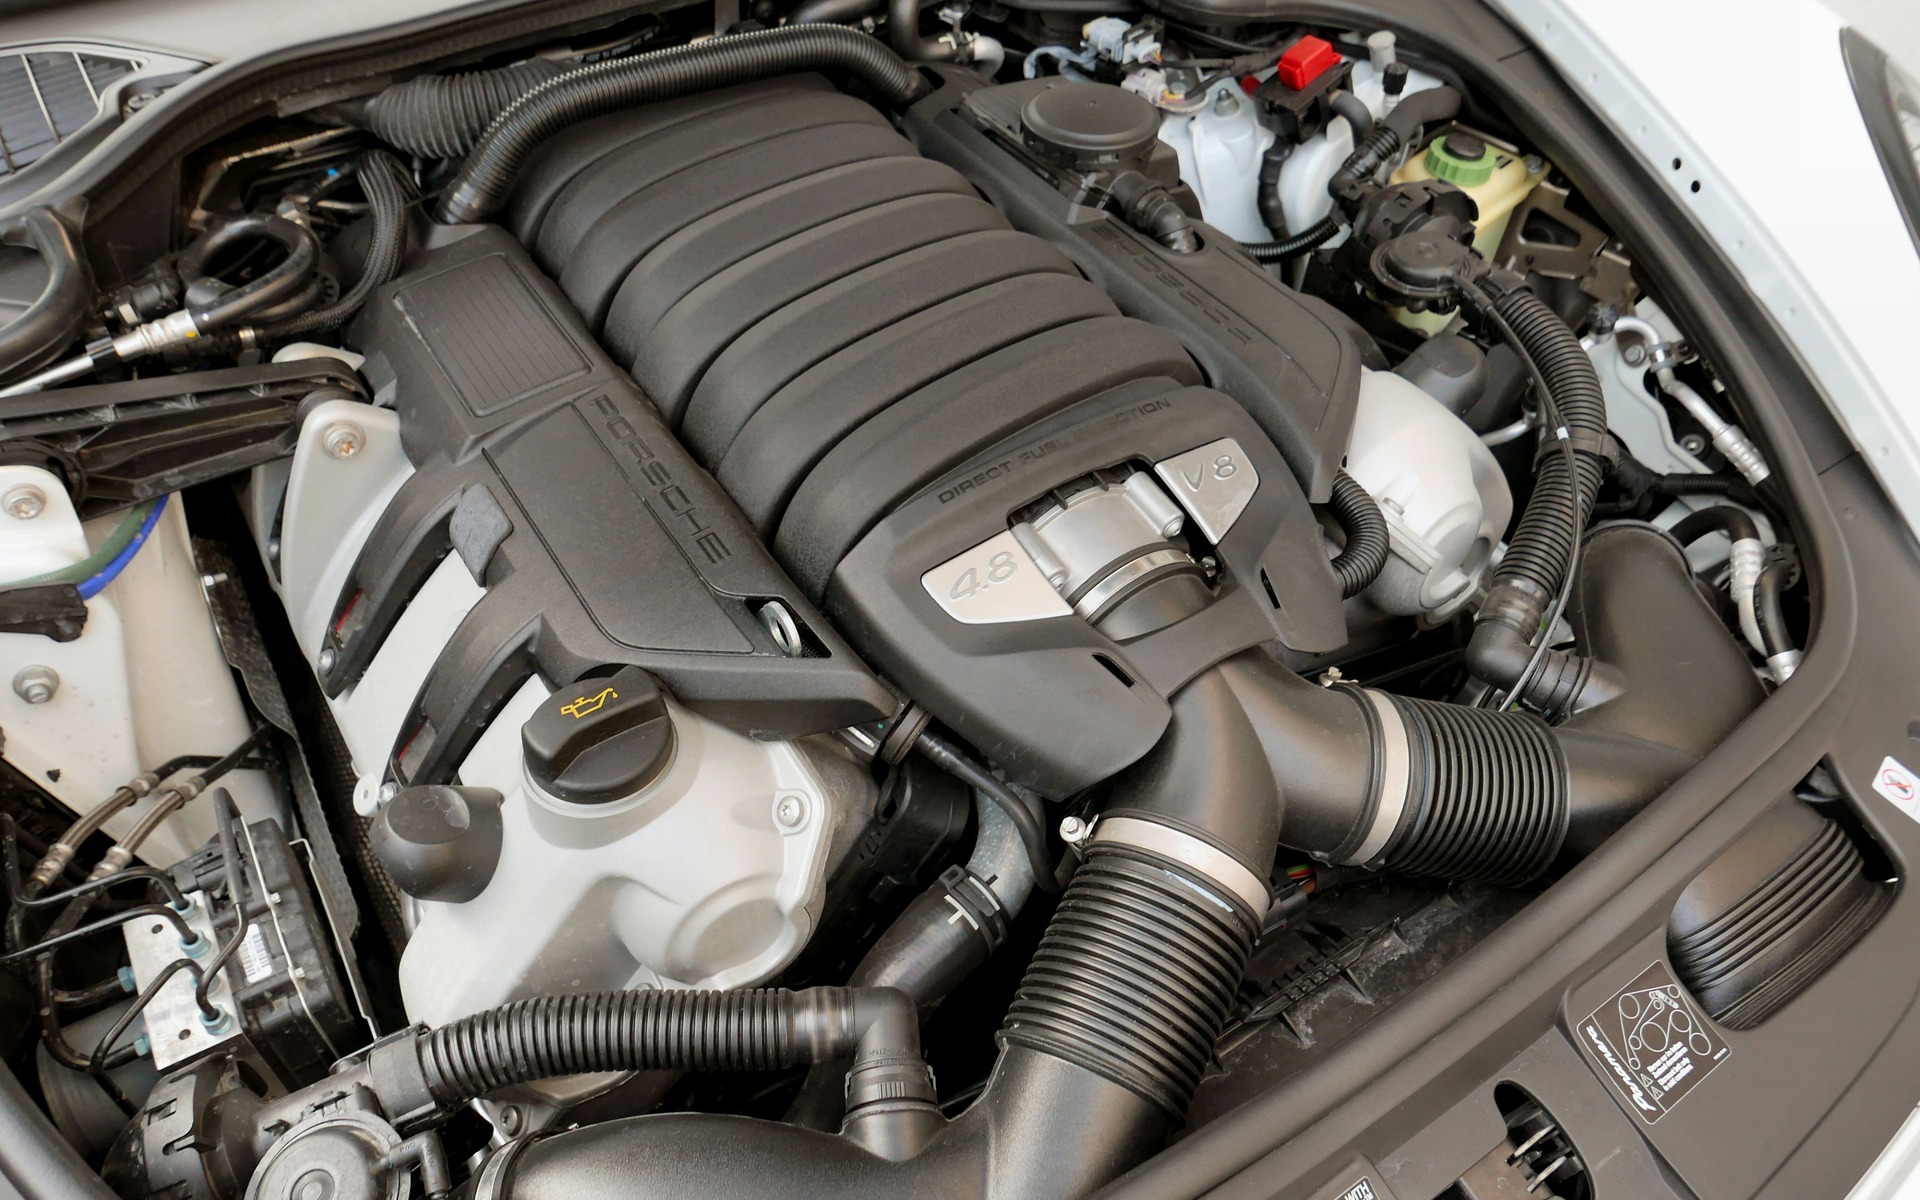 The Panamera GTS offers a 440 horsepower, 4.8-litre V8 engine.